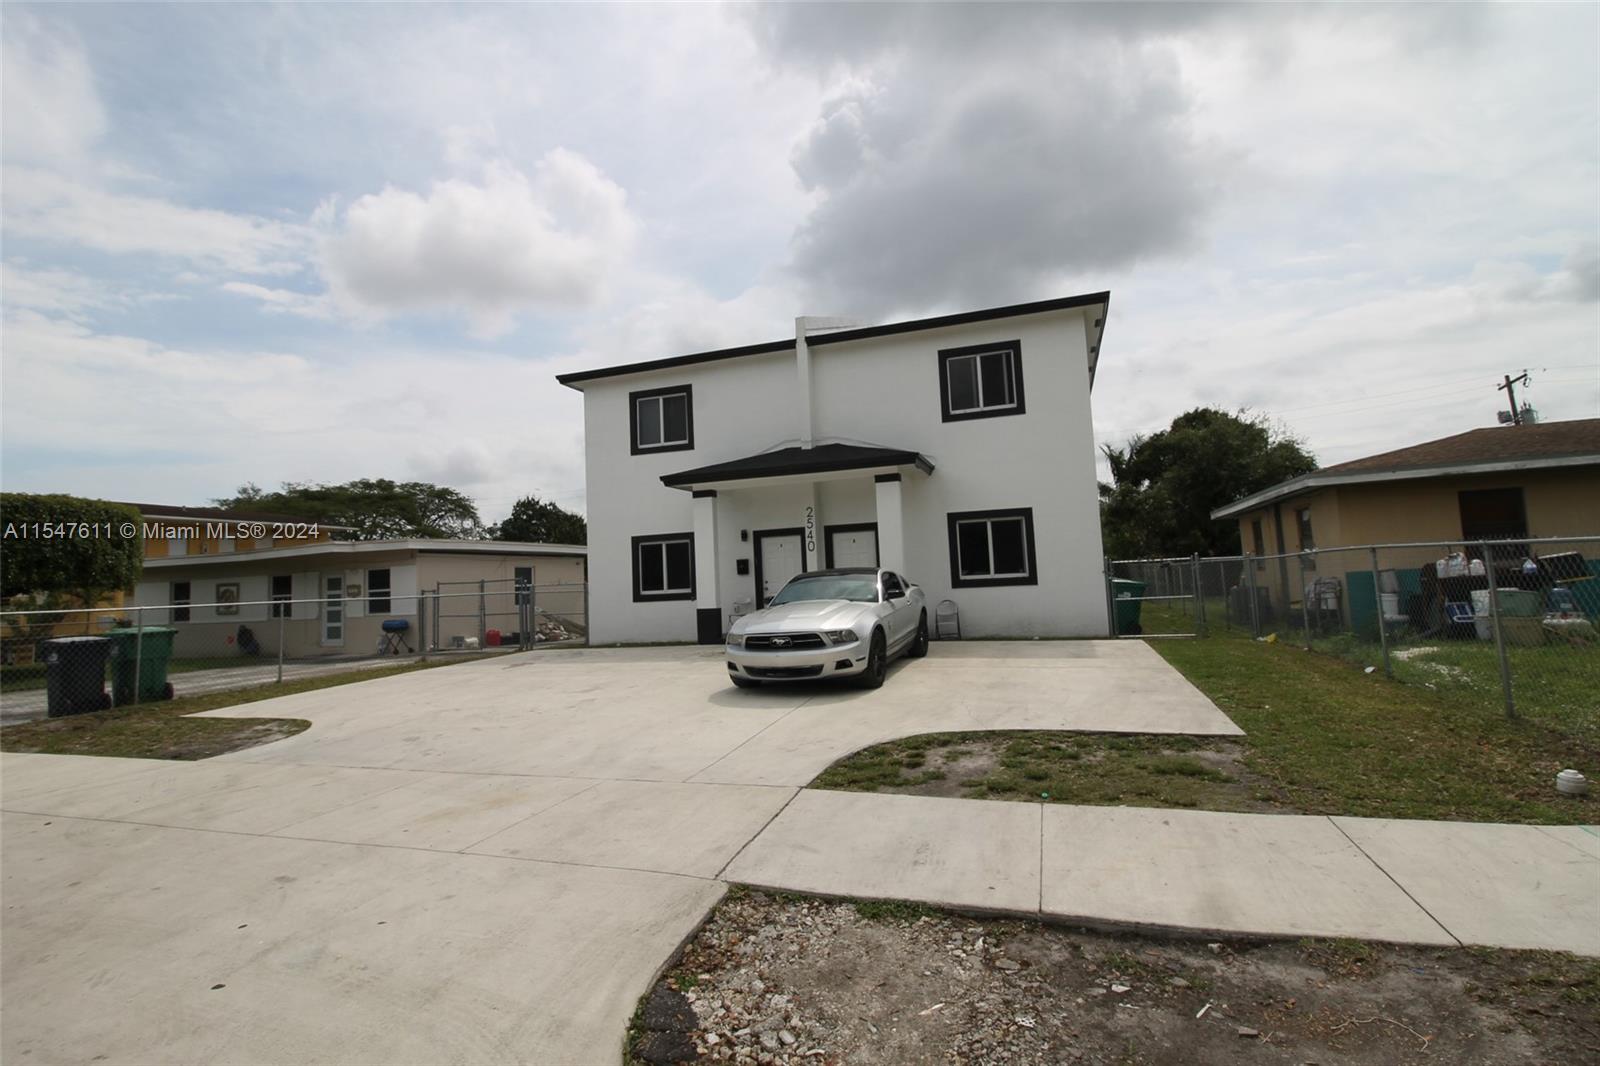 Rental Property at 2540 Nw 139th St St, Opa-Locka, Miami-Dade County, Florida -  - $899,999 MO.